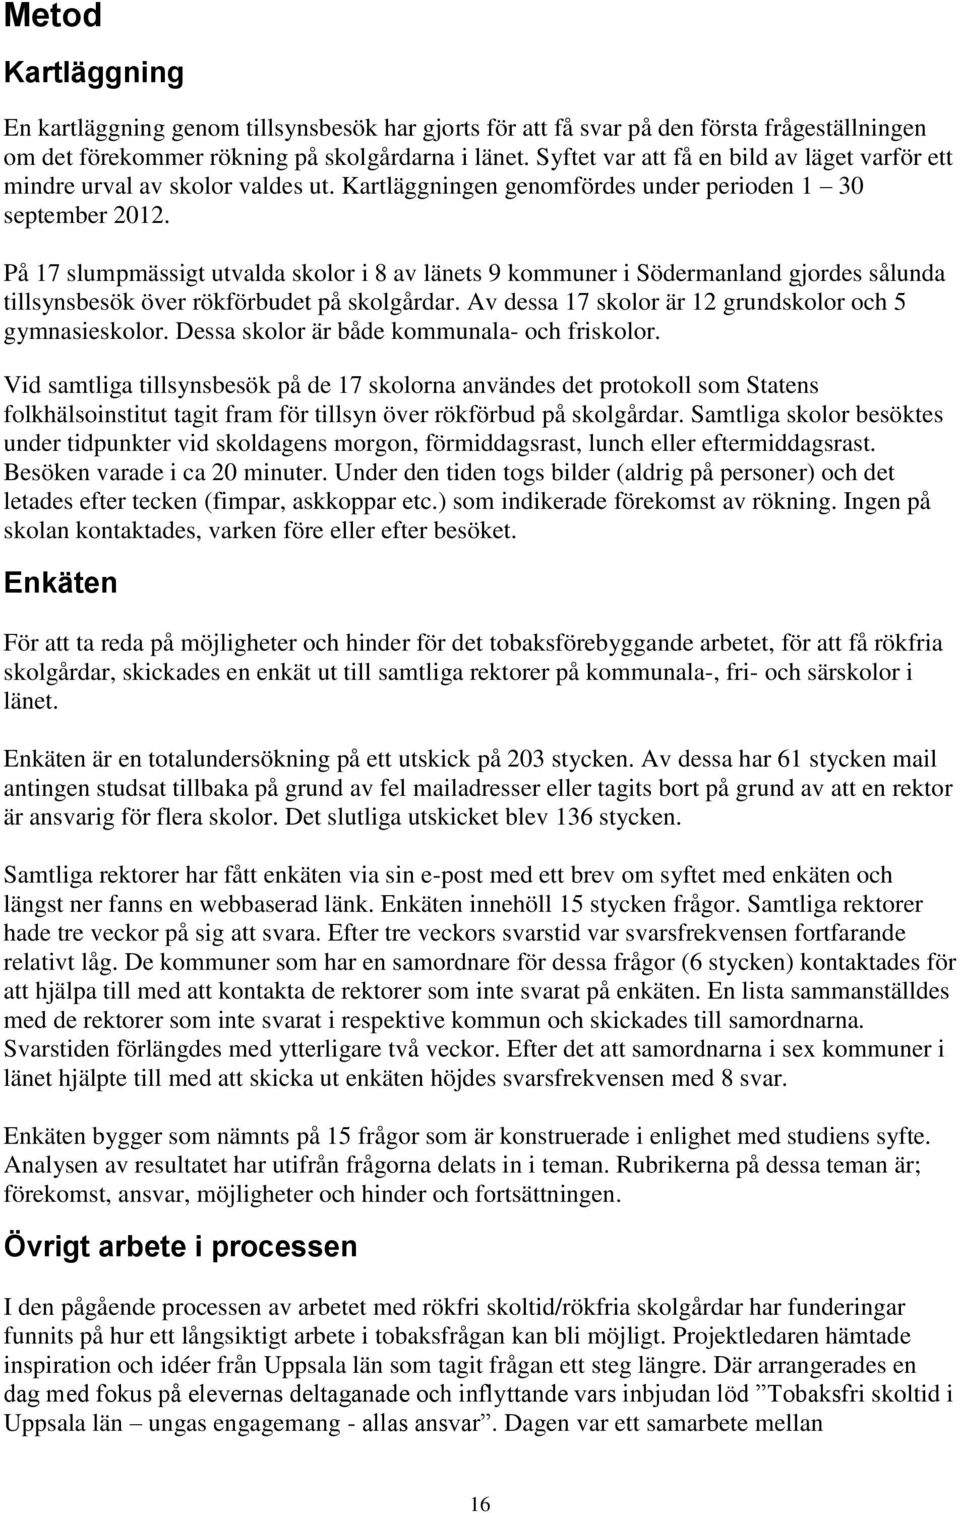 På 17 slumpmässigt utvalda skolor i 8 av länets 9 kommuner i Södermanland gjordes sålunda tillsynsbesök över rökförbudet på skolgårdar. Av dessa 17 skolor är 12 grundskolor och 5 gymnasieskolor.